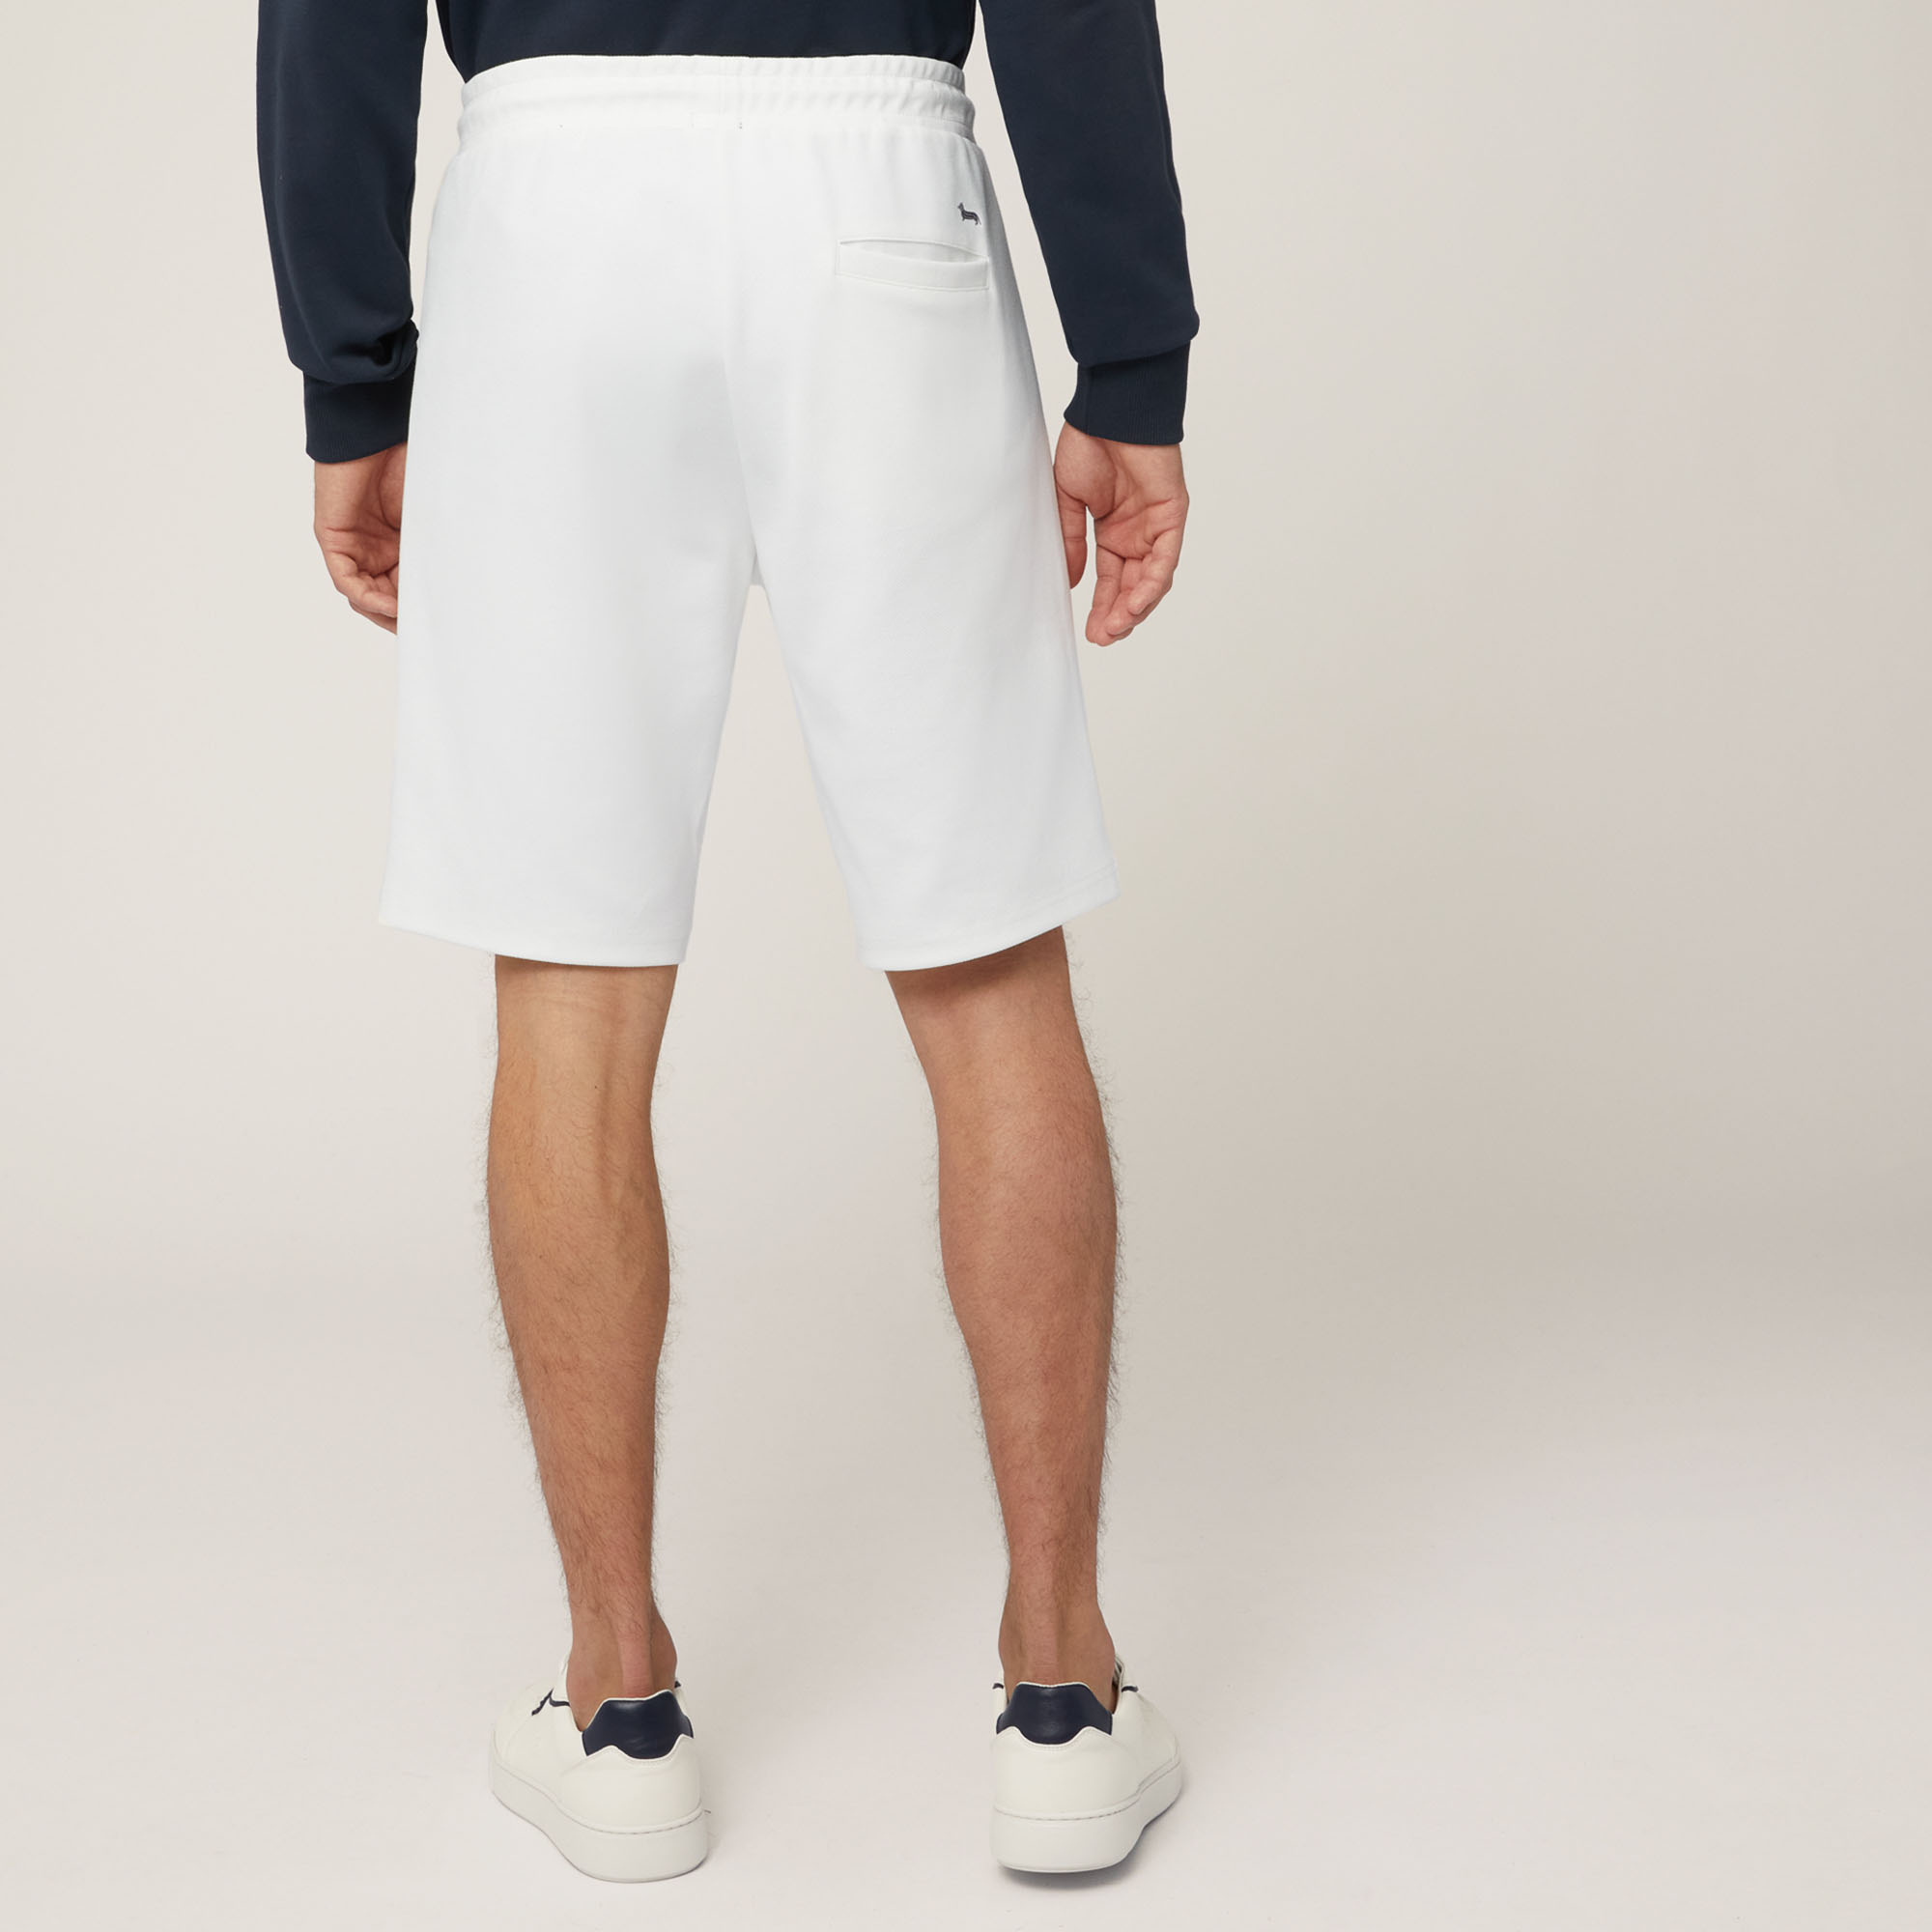 Pantalón corto de algodón elástico con bolsillo trasero, Blanco, large image number 1